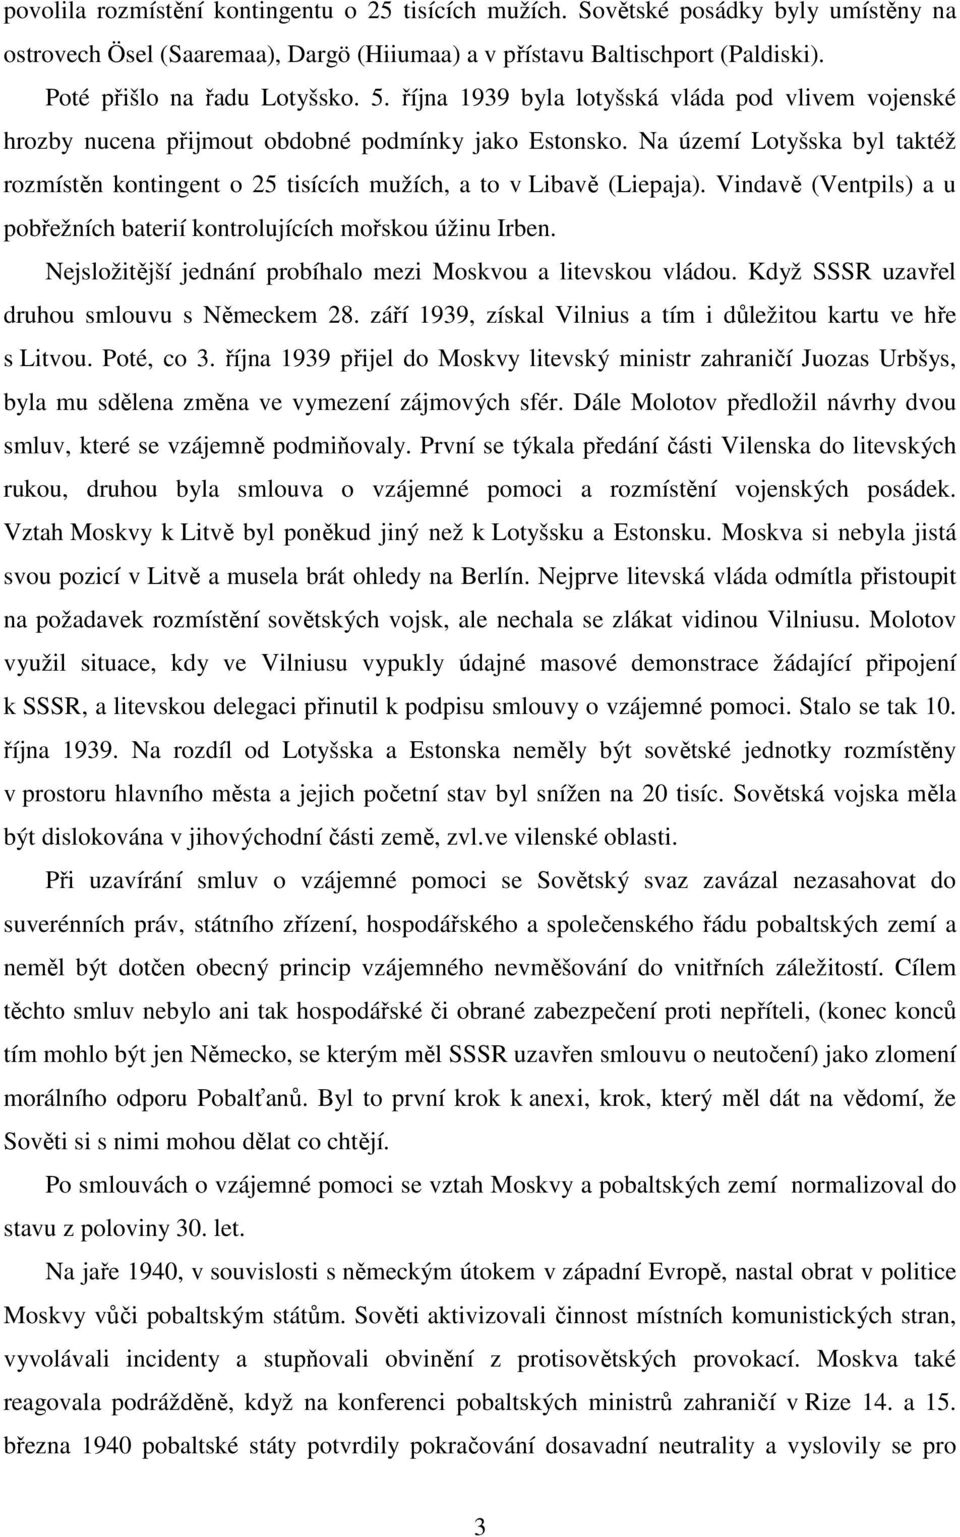 Na území Lotyšska byl taktéž rozmístěn kontingent o 25 tisících mužích, a to v Libavě (Liepaja). Vindavě (Ventpils) a u pobřežních baterií kontrolujících mořskou úžinu Irben.